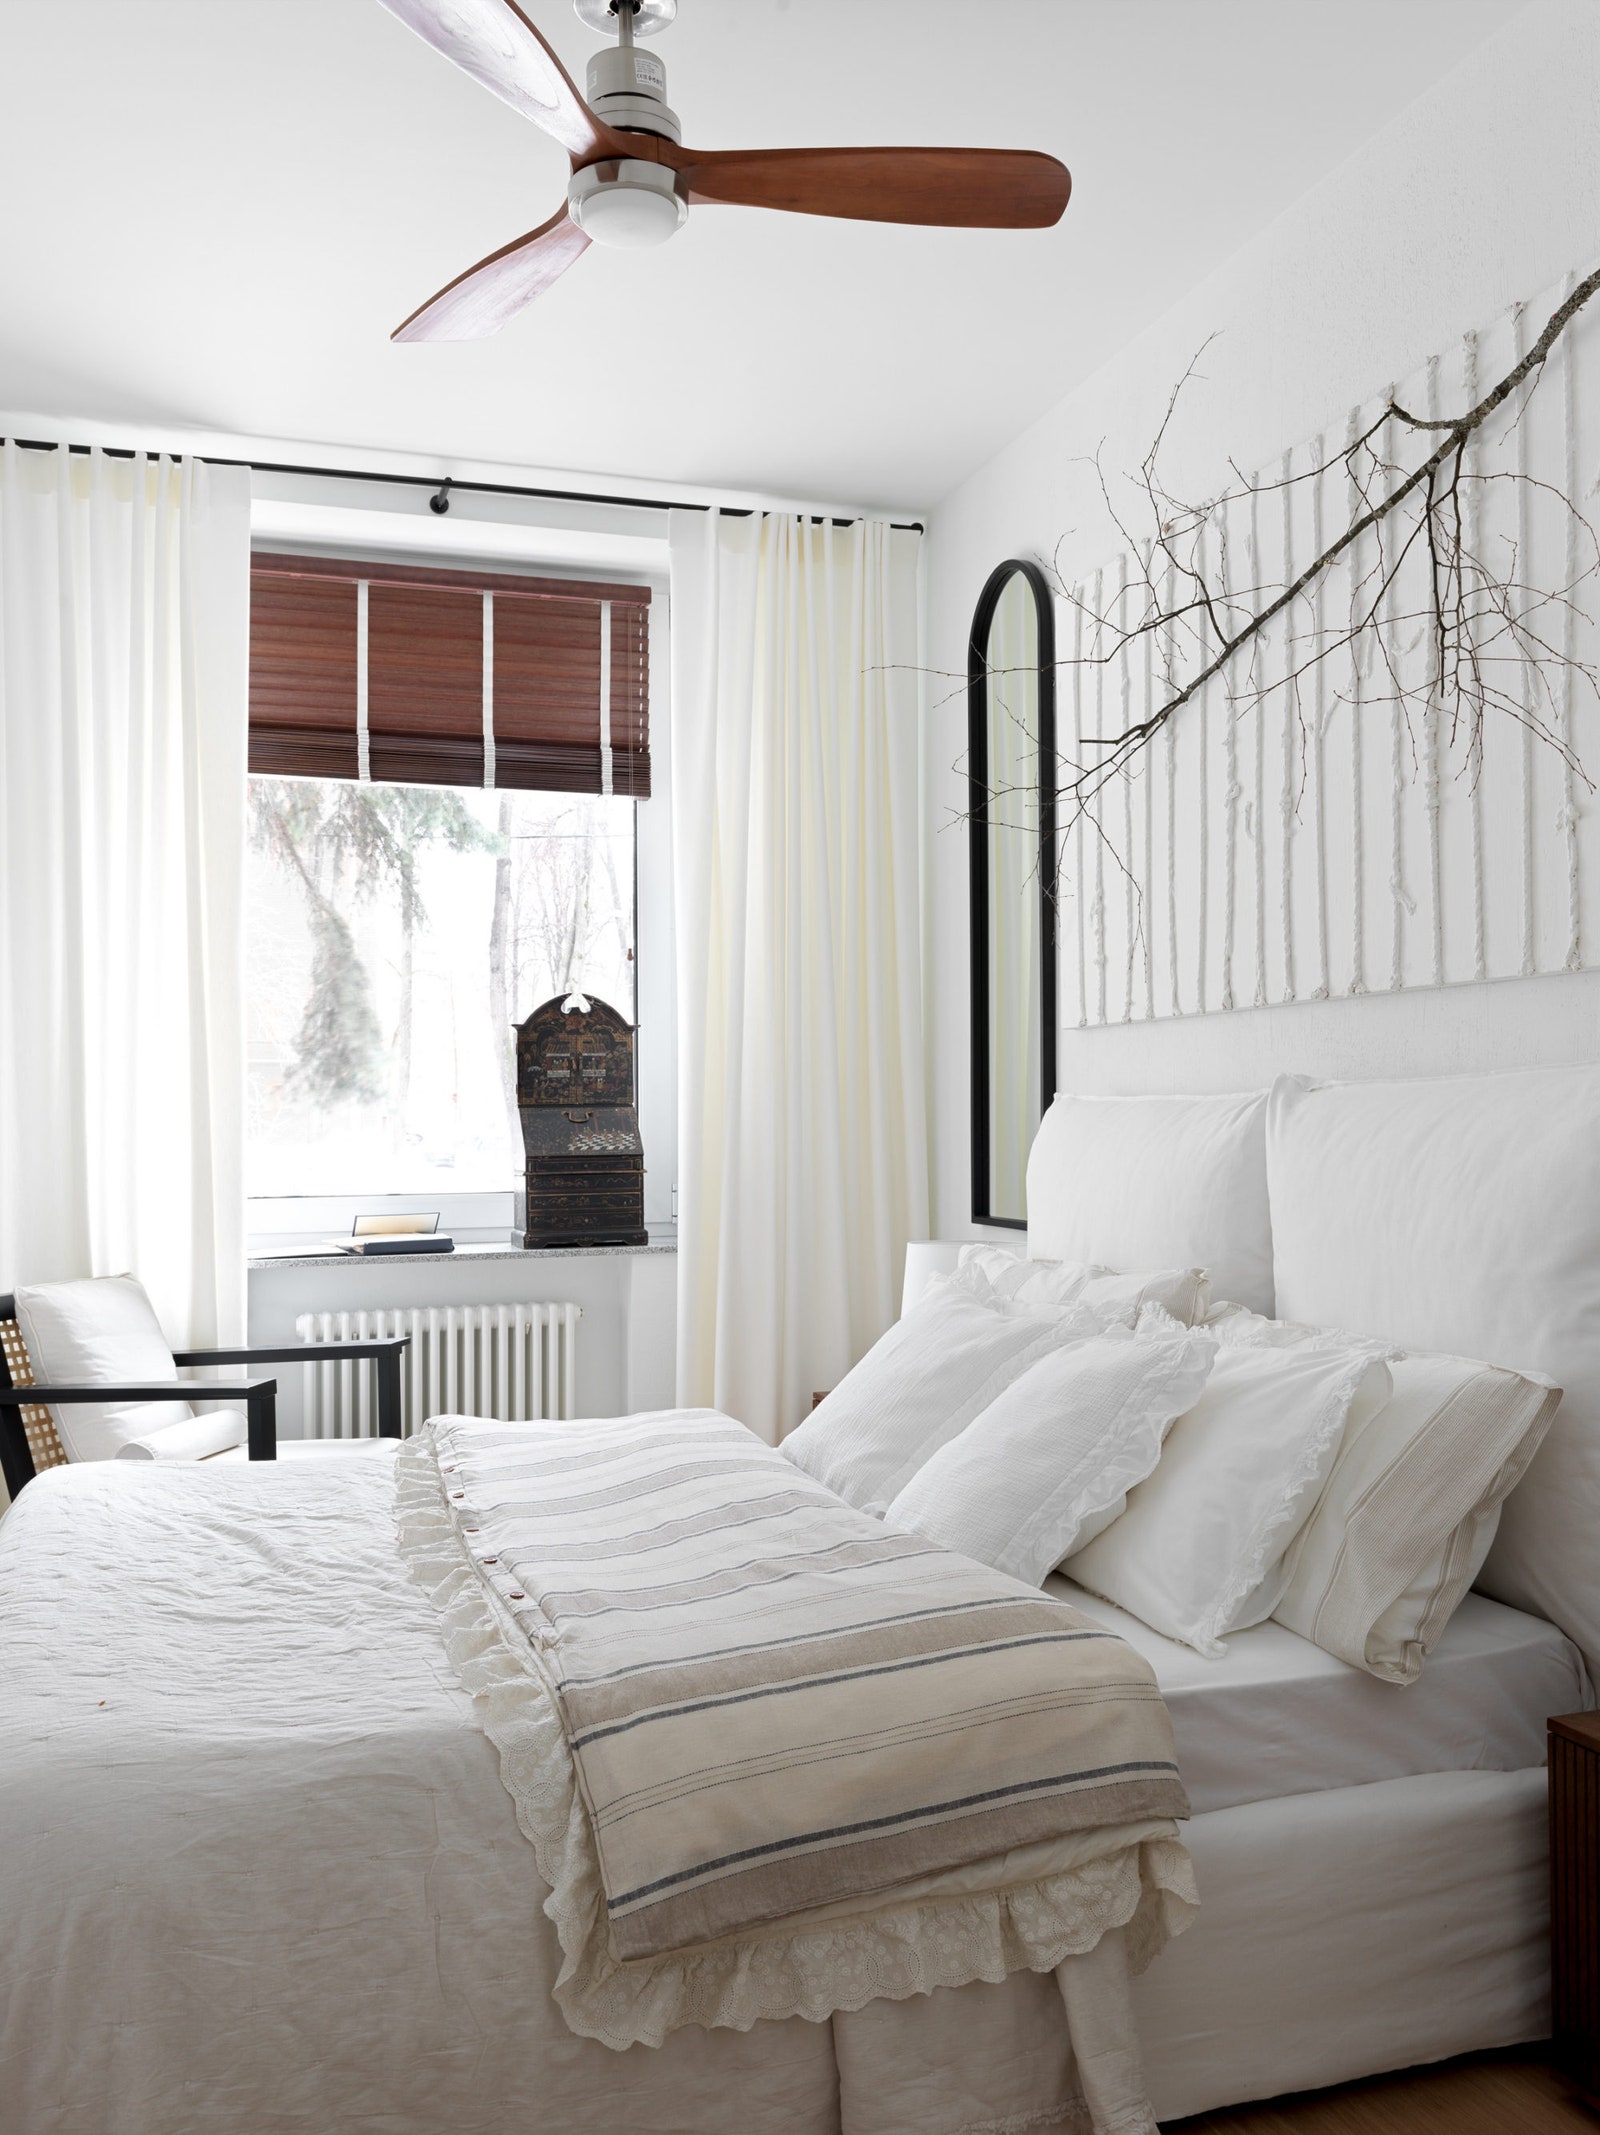 Проект Special Style. Фрагмент спальни. Кровать и кресло Gervasoni зеркало Zara Home над кроватью работа Masha amp...